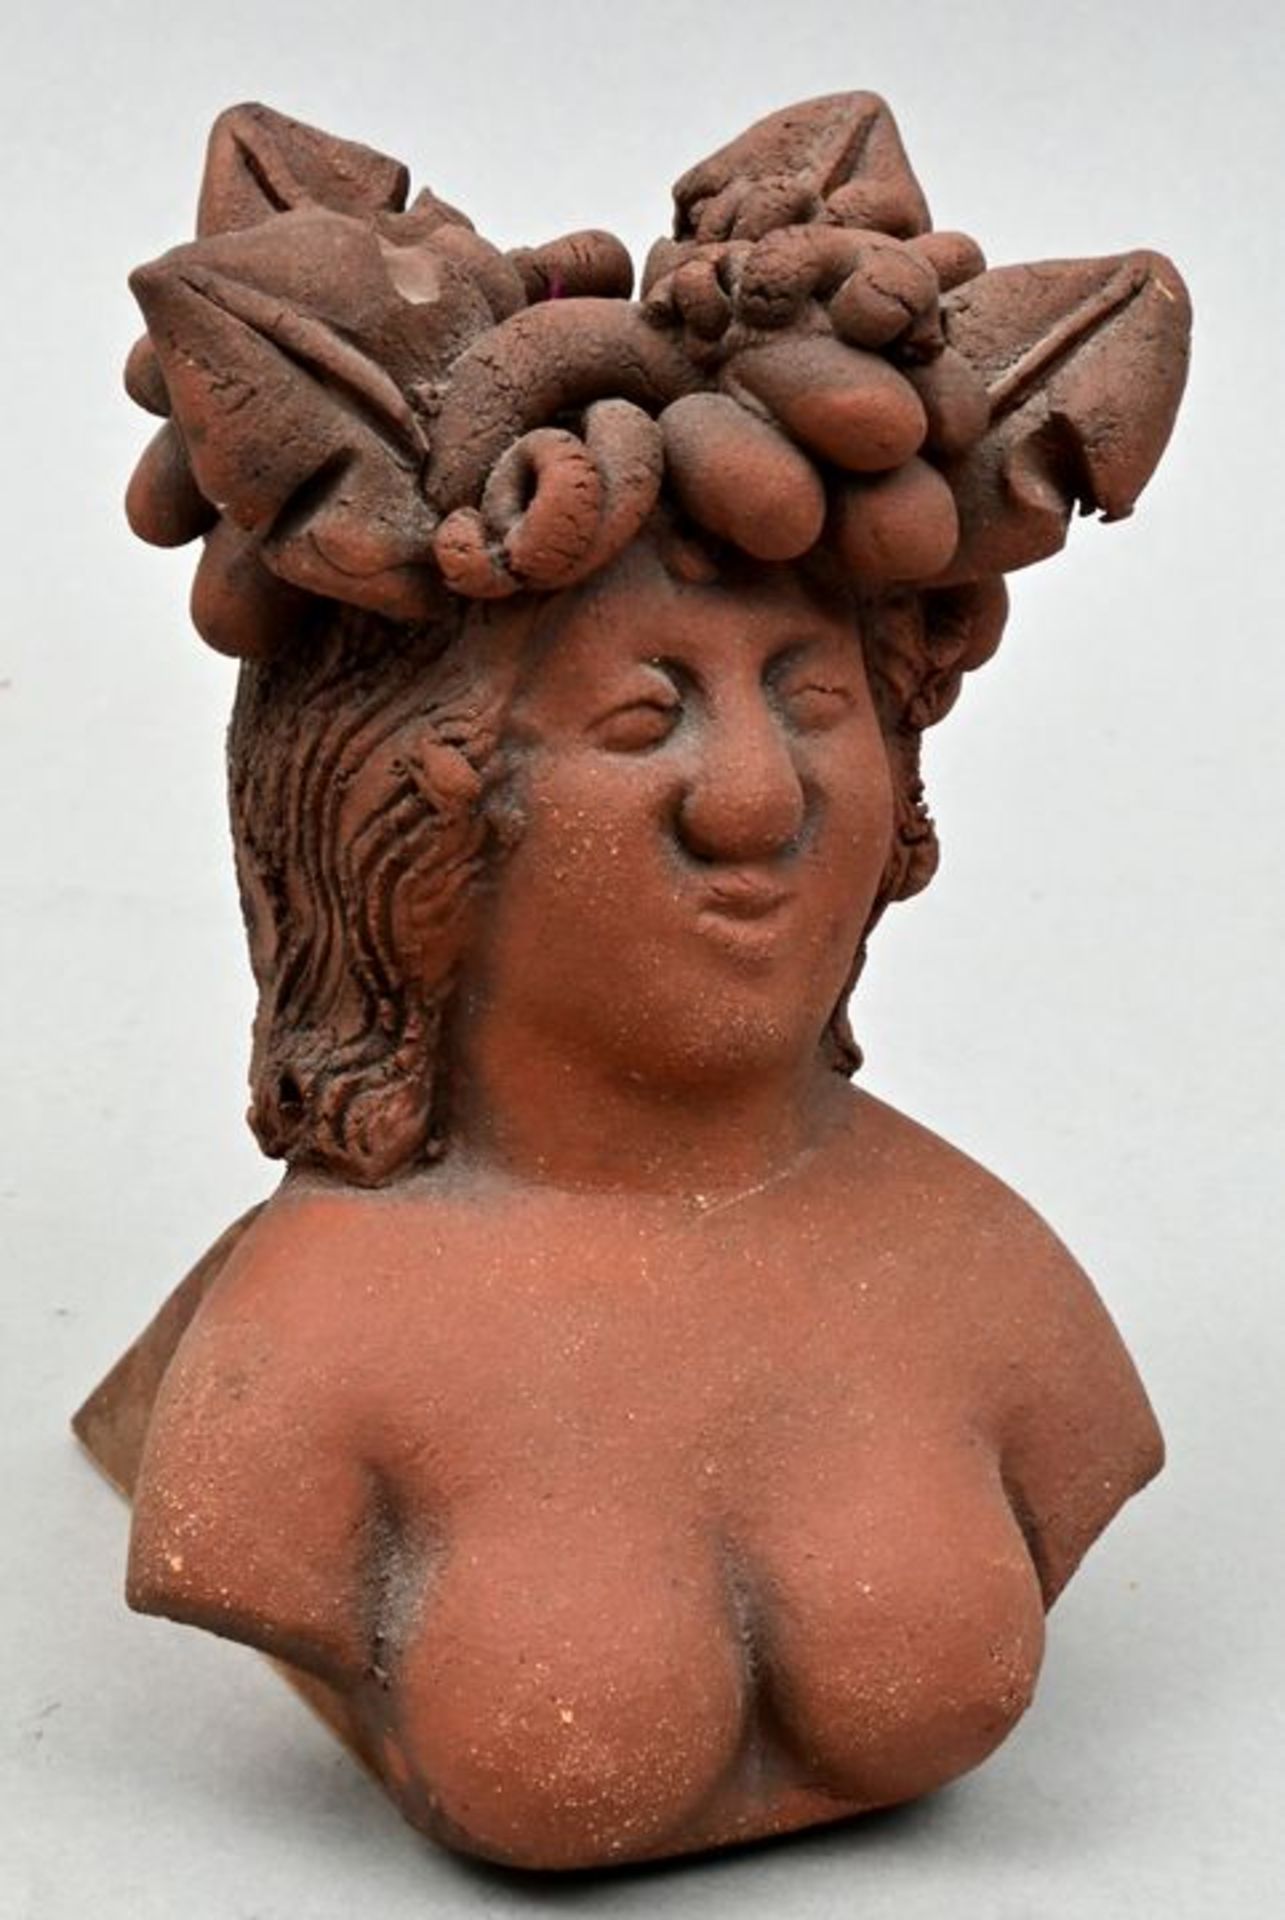 Sell, Lothar, kleiner weiblicher Torso mit Früchtekranz / small sculpture